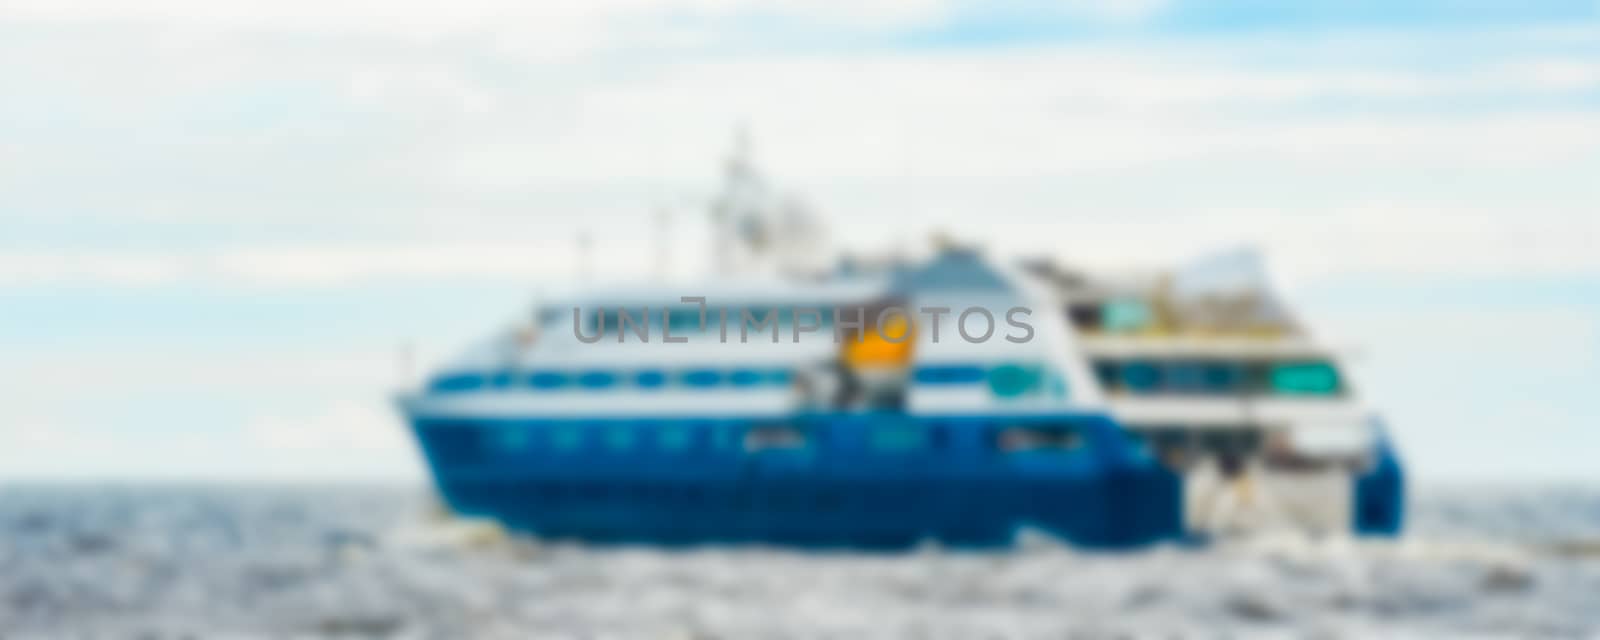 Blue passenger ship - blurred image by sengnsp